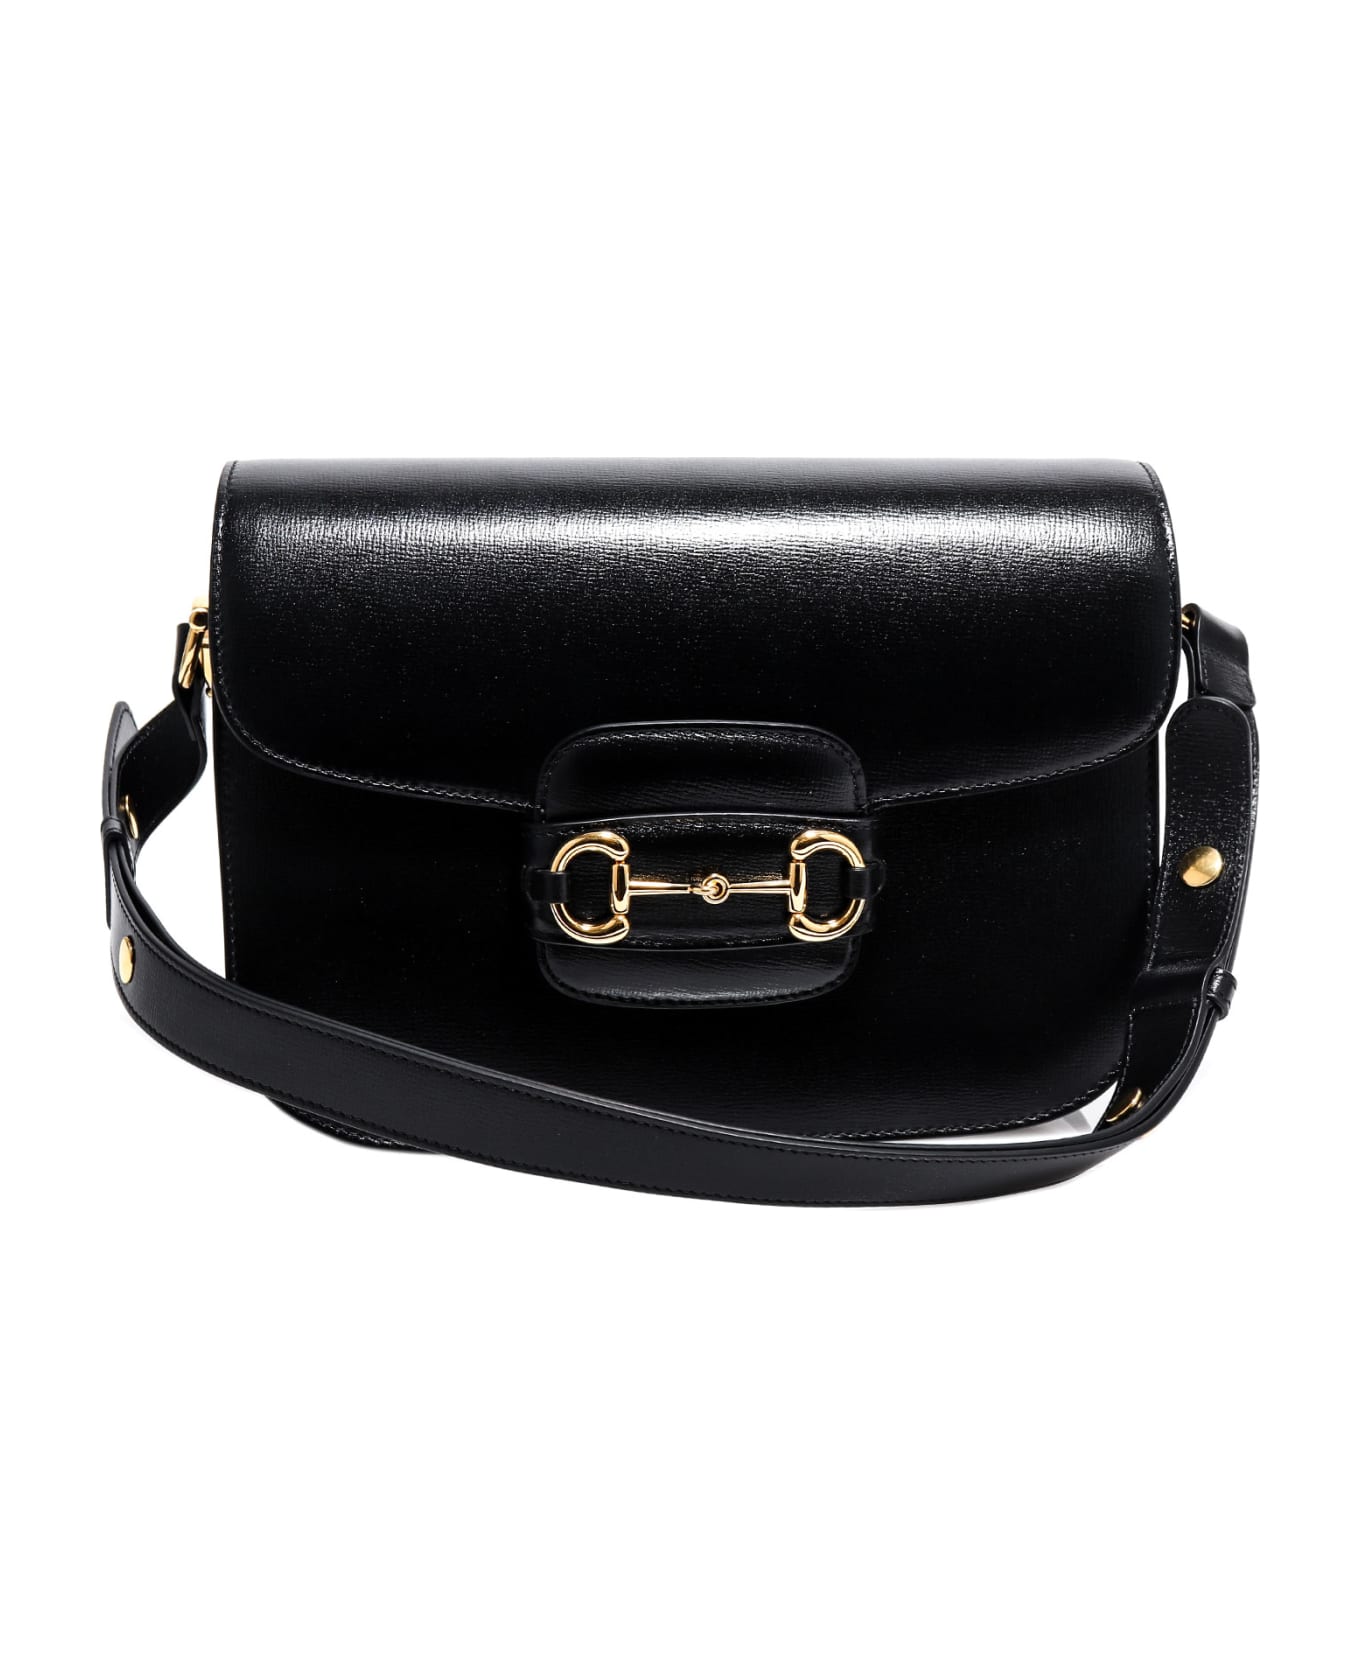 Gucci 1955 Horsebit Shoulder Bag - Black